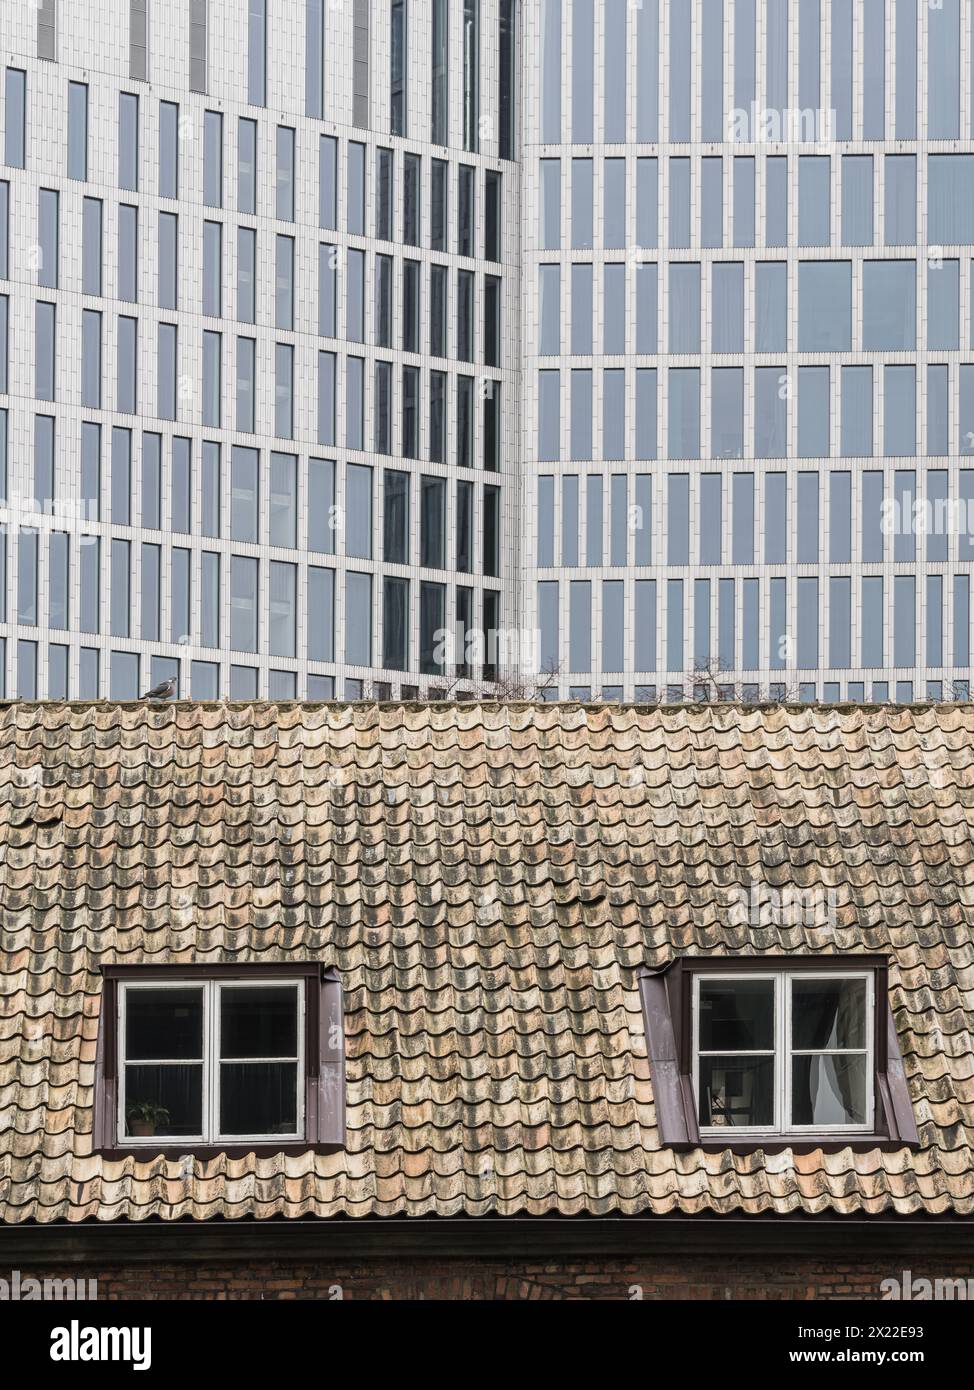 Die kontrastierenden architektonischen Stile in Malmö, Schweden, werden hier festgehalten und zeigen die altmodische Dachkachel eines historischen Gebäudes im f Stockfoto